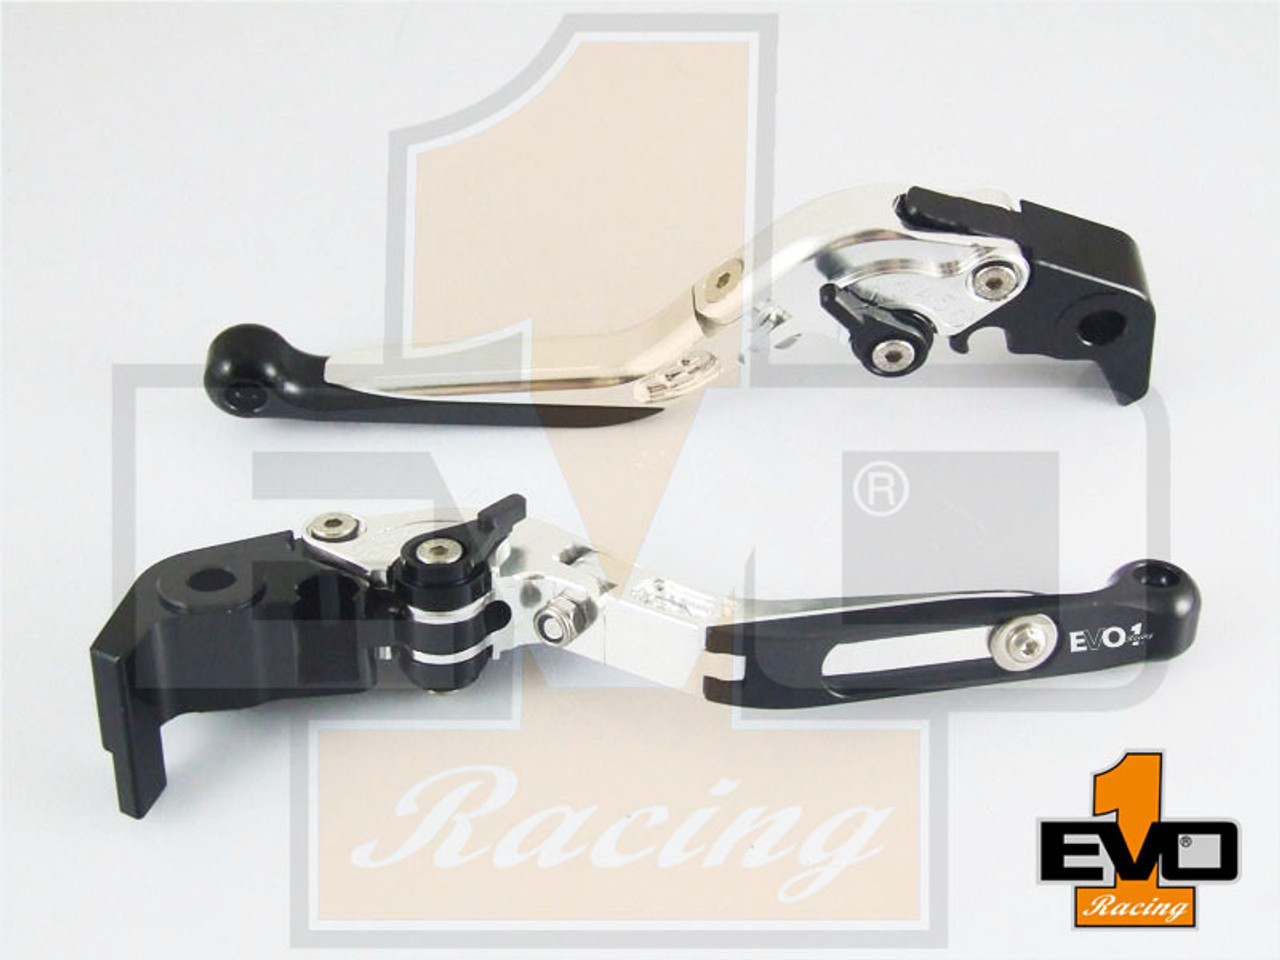 Kawasaki GPZ500S / EX500R NINJA Brake & Clutch Fold & Extend Levers - Silver